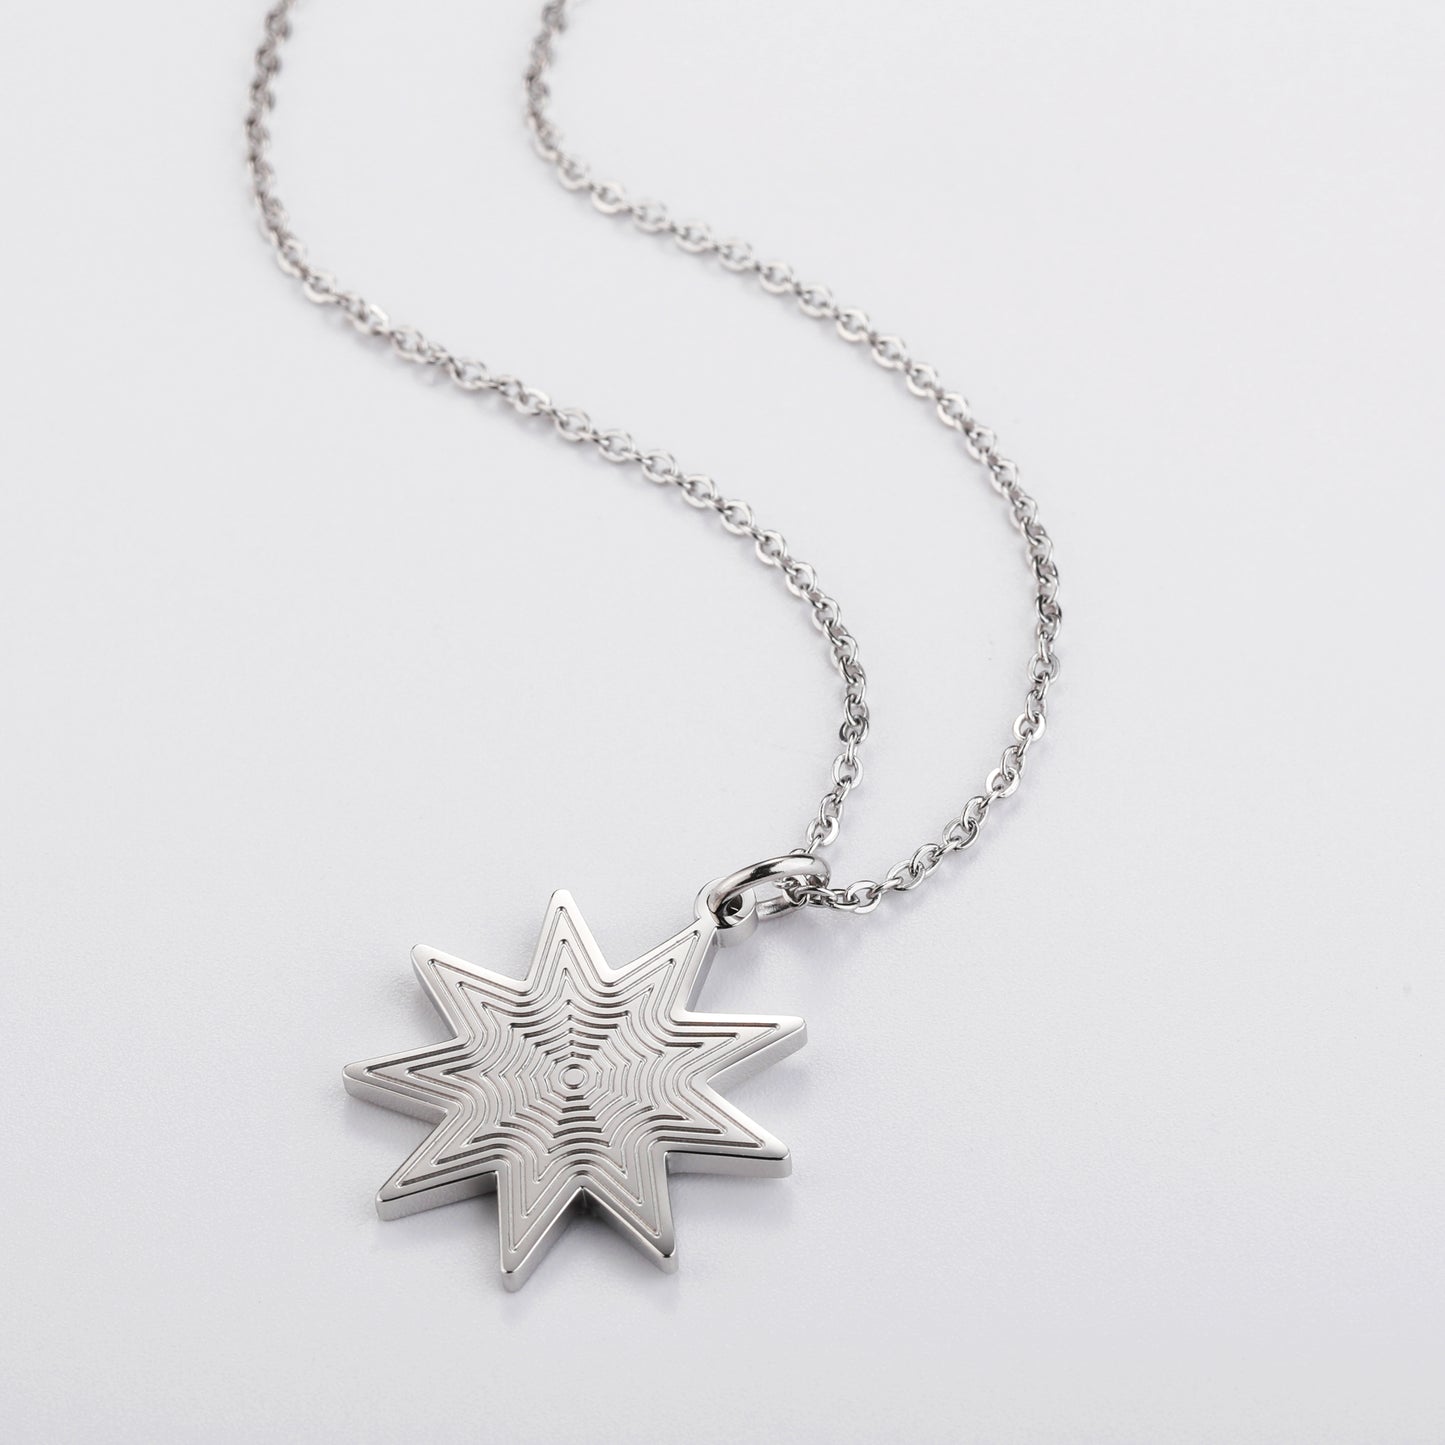 Darjali Jewelry Radiant Star Necklace 18K White Gold